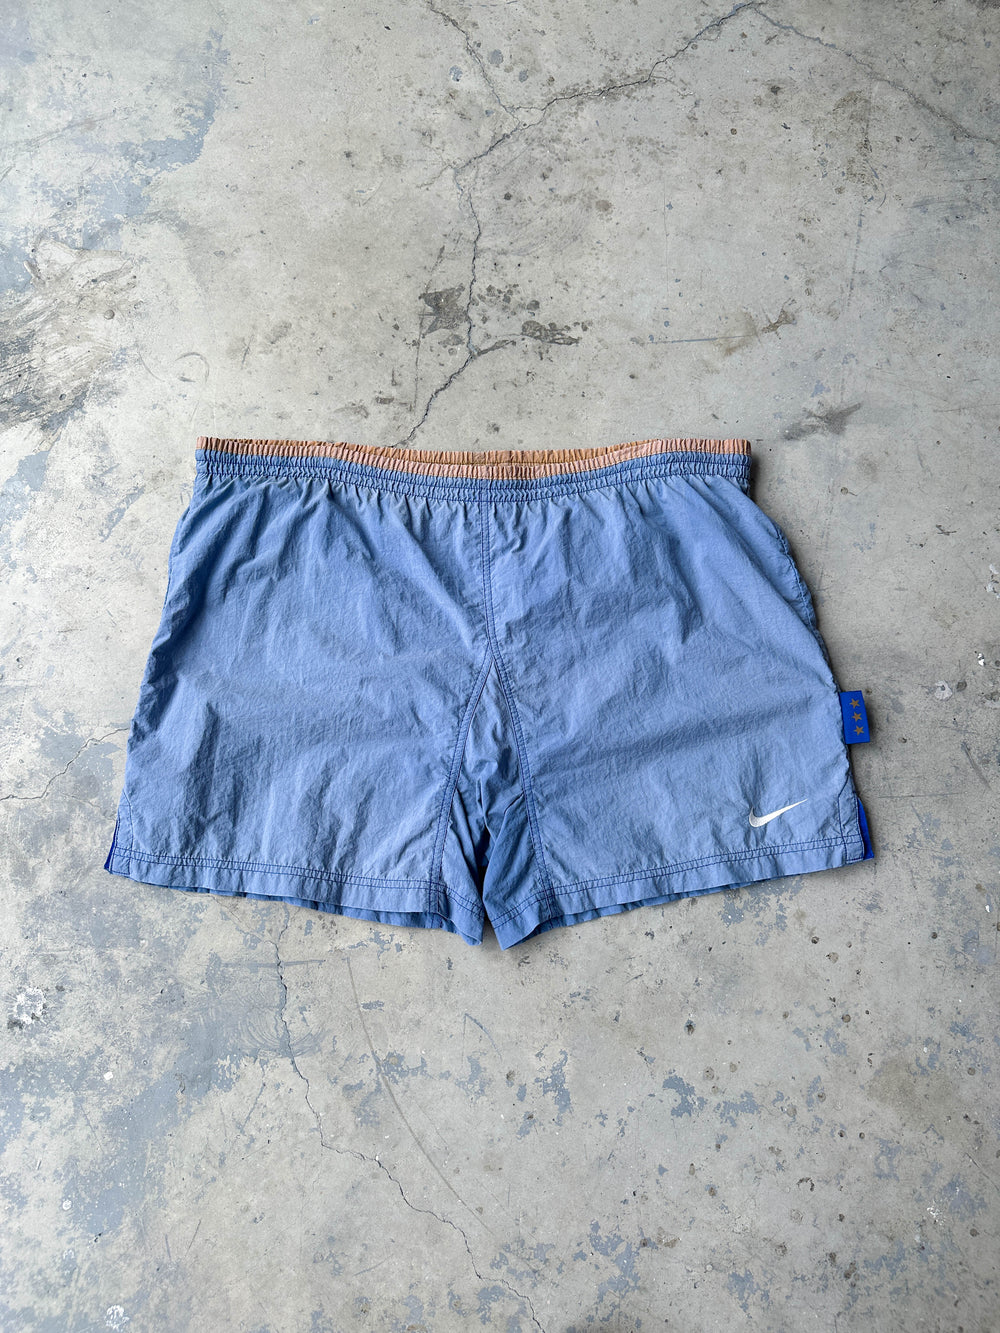 Vintage 90s Nike shorts